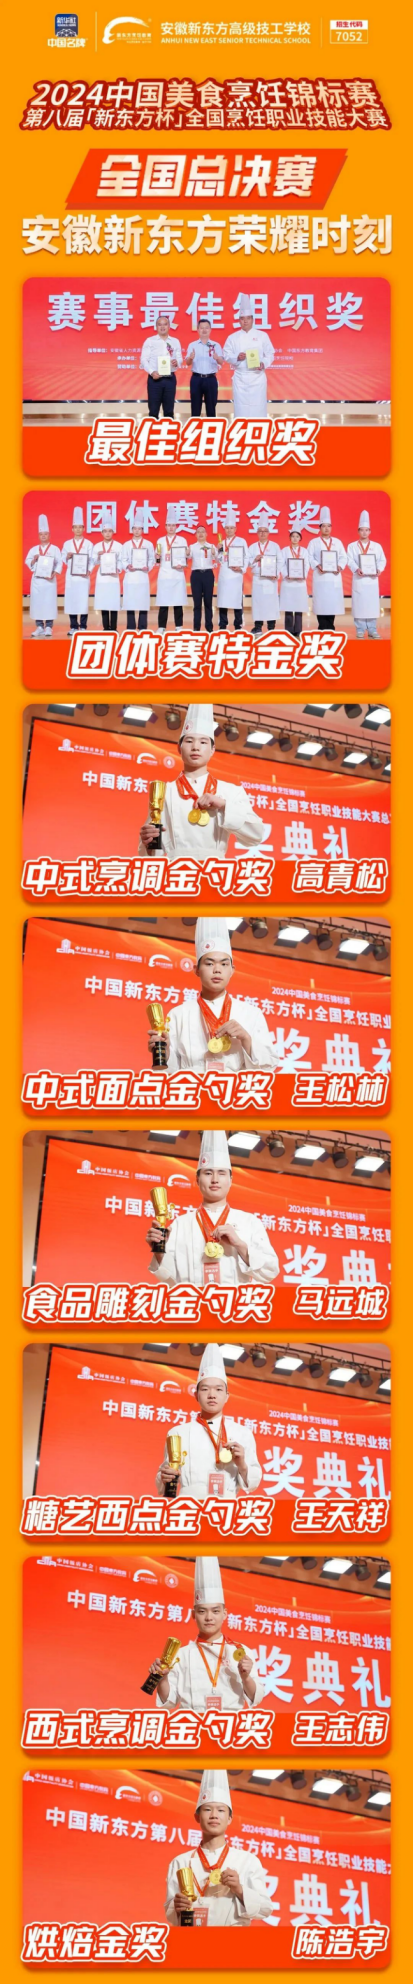 2024中国美食烹饪锦标赛